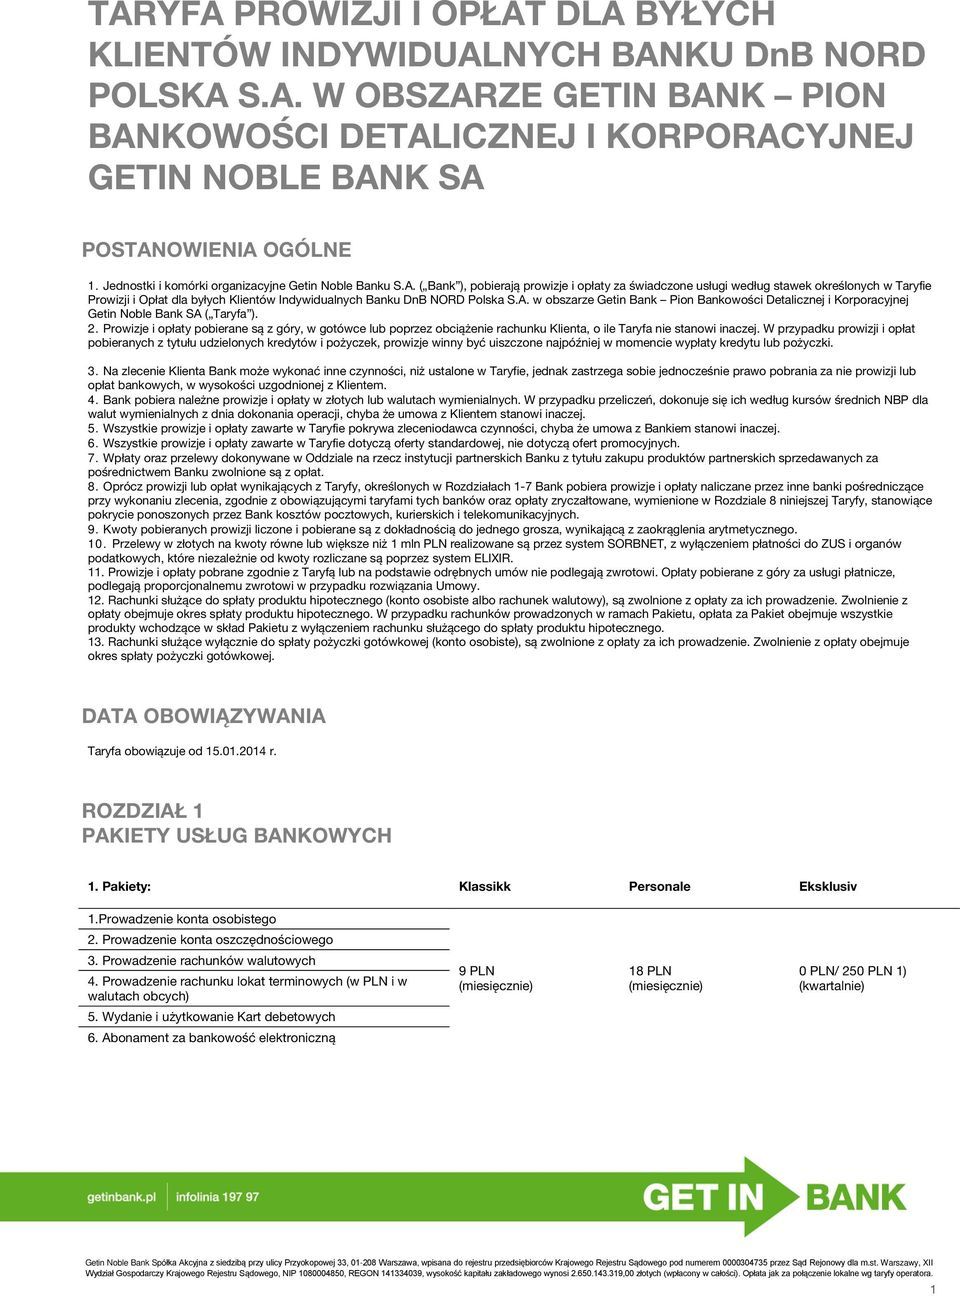 ( Bank ), pobierają prowizje i opłaty za świadczone usługi według stawek określonych w Taryfie Prowizji i Opłat dla byłych Klientów Indywidualnych Banku DnB NORD Polska S.A.